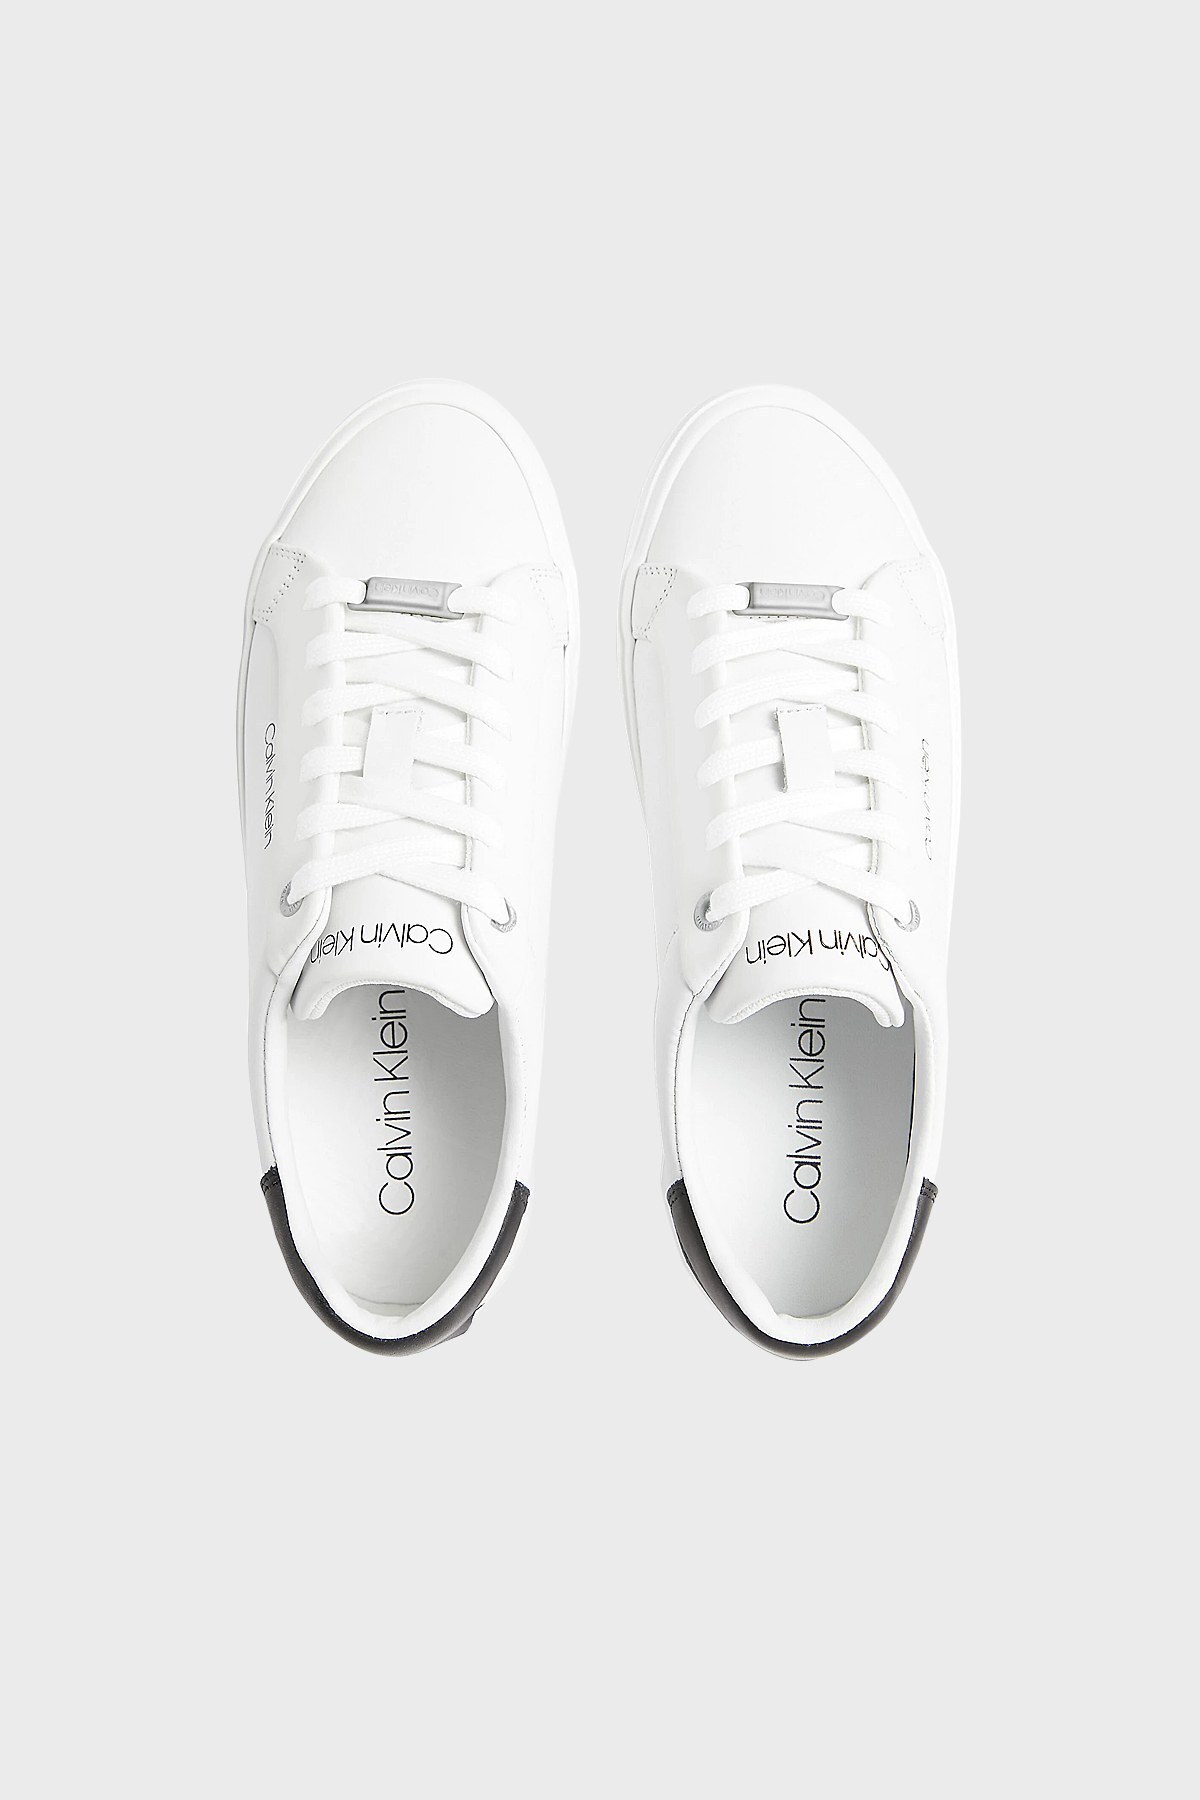 Calvin Klein Logolu Hakiki Deri Sneaker Bayan Ayakkabı HW0HW00568 0K6 BEYAZ